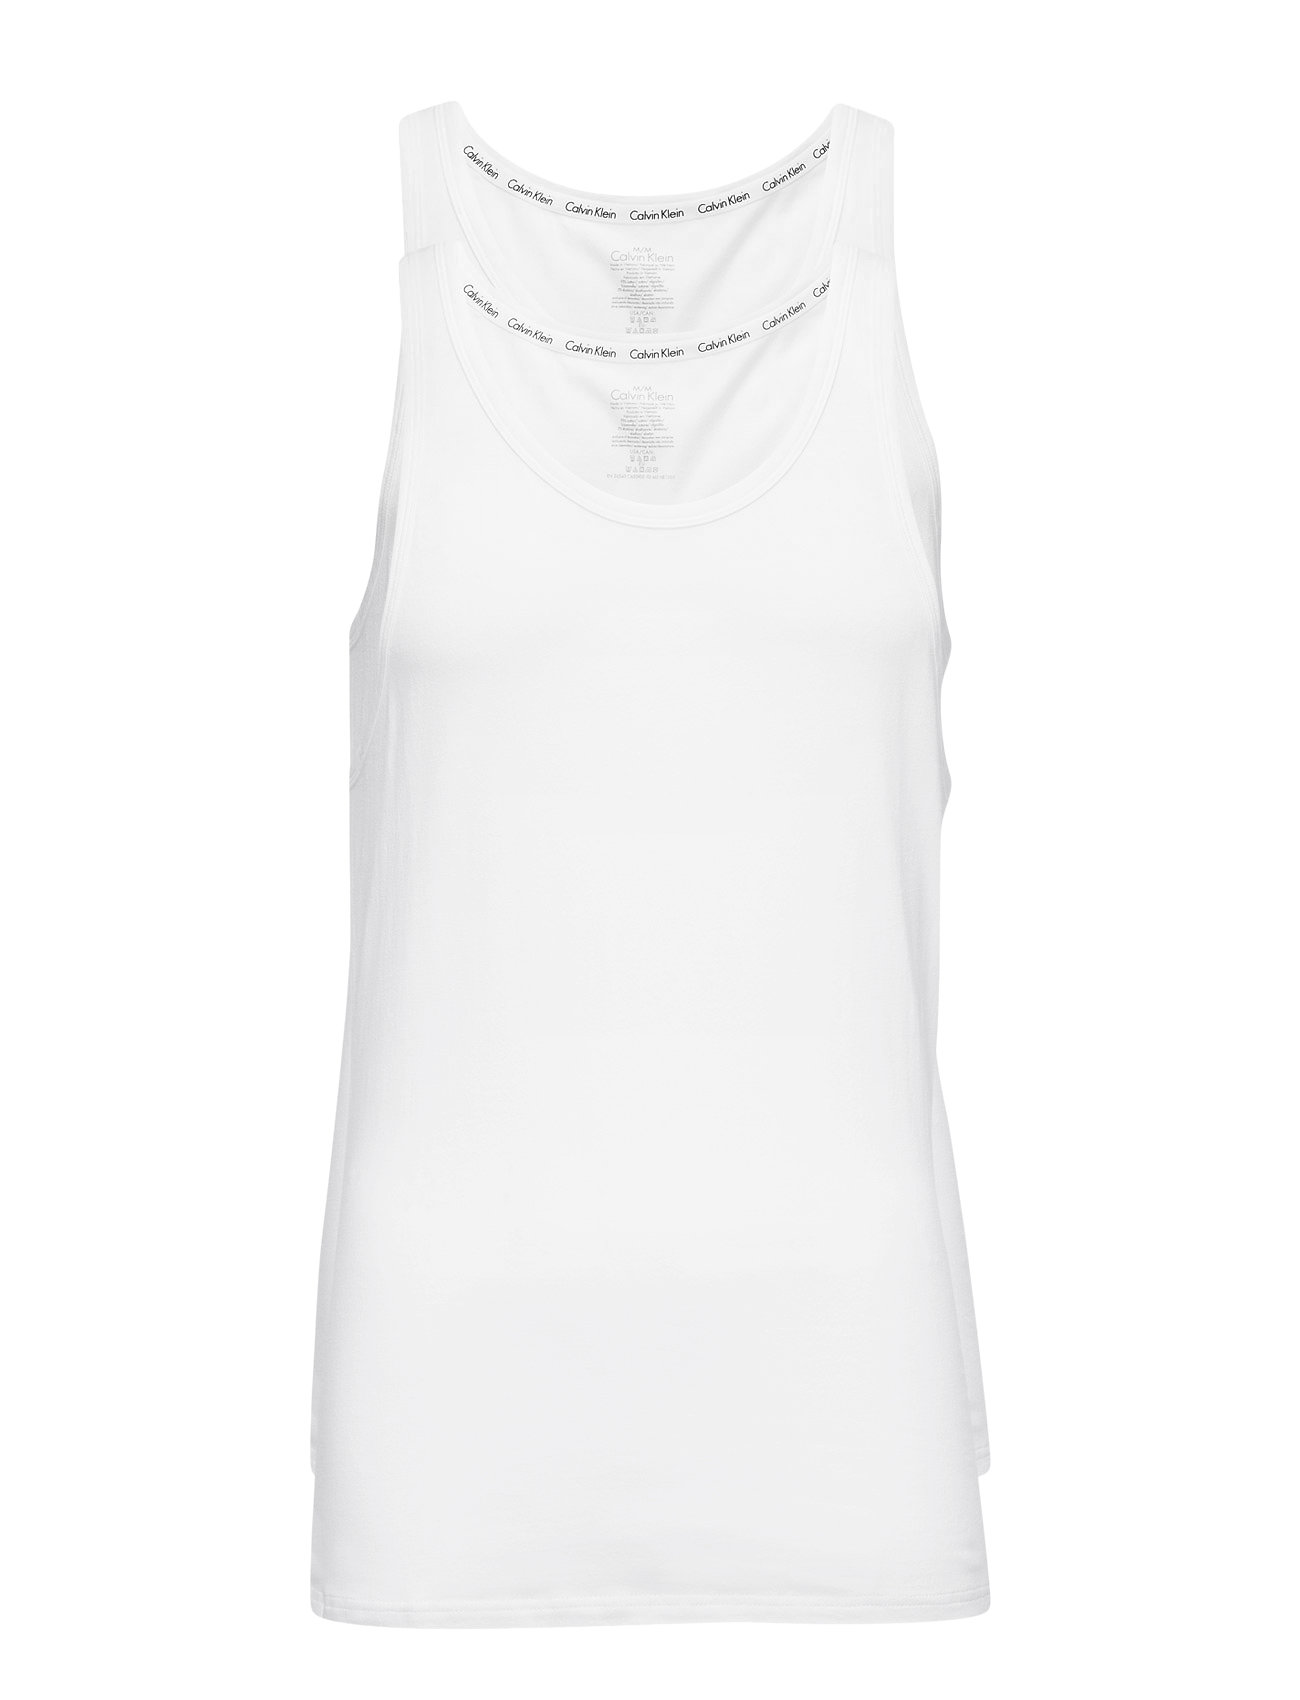 2P Tank Tops T-shirts Sleeveless White Calvin Klein